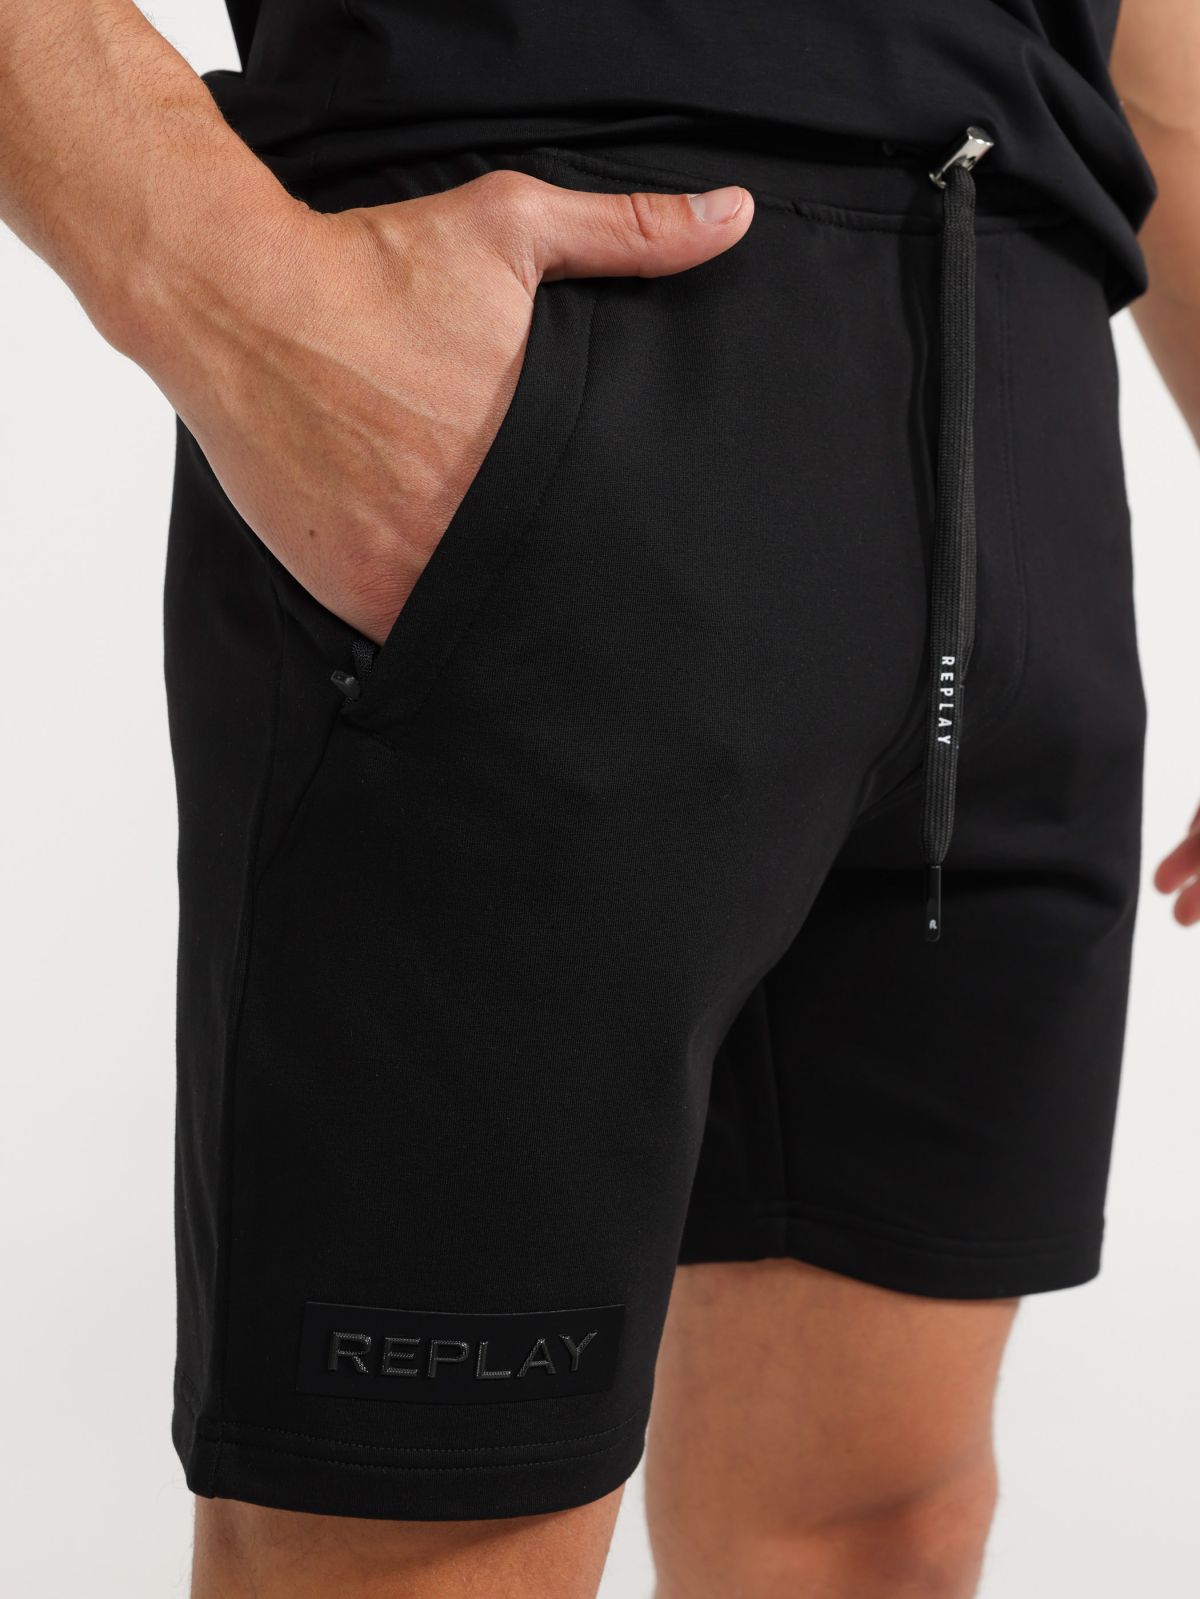  מכנסיים קצרים עם תבליט לוגו של REPLAY